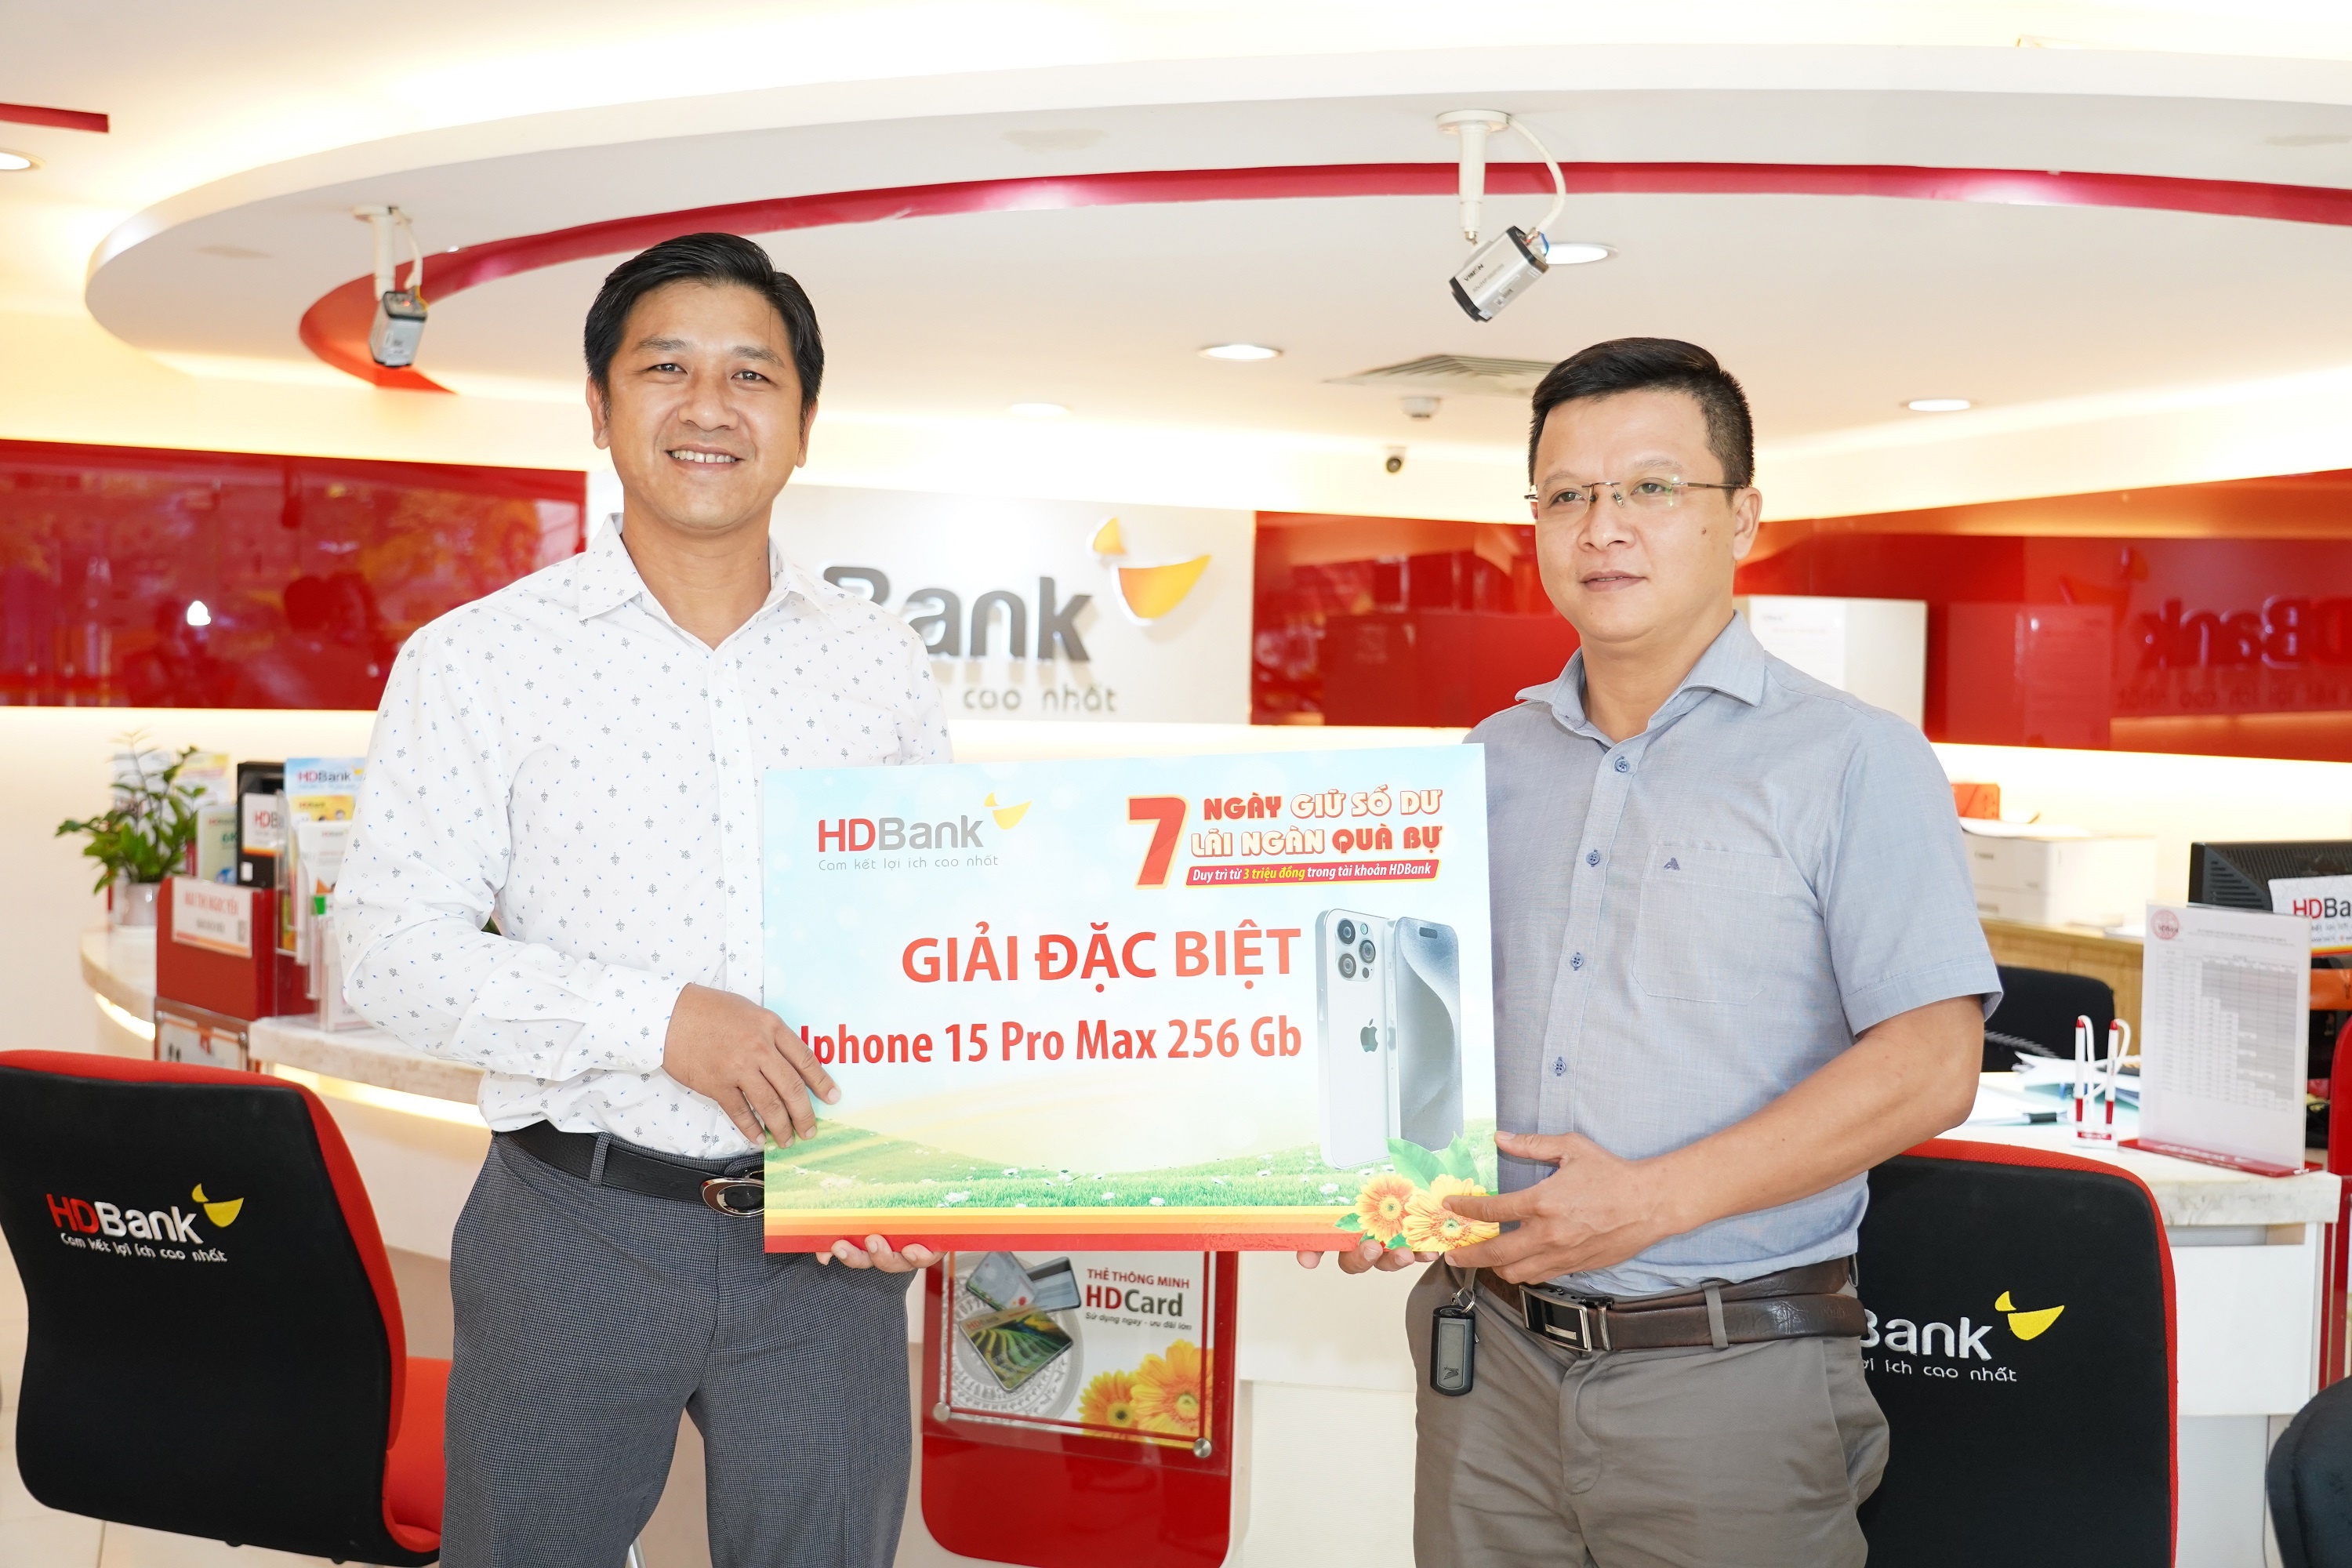 Anh Nguyễn Đình Trung (trái)– khách háng trúng thưởng giải đặc biệt nhận Iphone 15 Pro max 256 GB